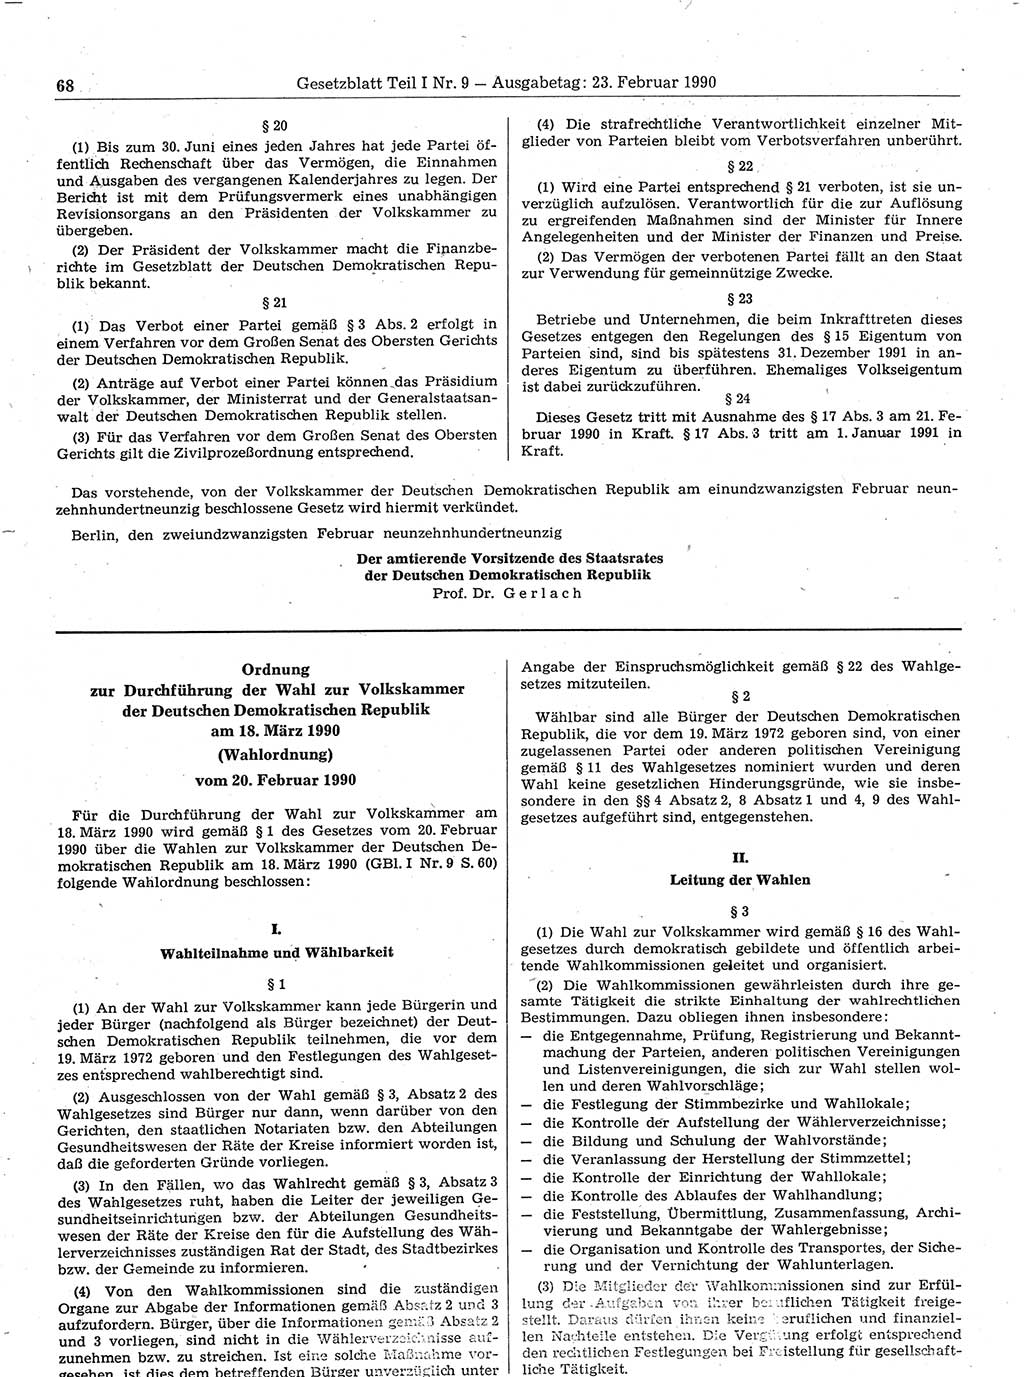 Gesetzblatt (GBl.) der Deutschen Demokratischen Republik (DDR) Teil Ⅰ 1990, Seite 68 (GBl. DDR Ⅰ 1990, S. 68)